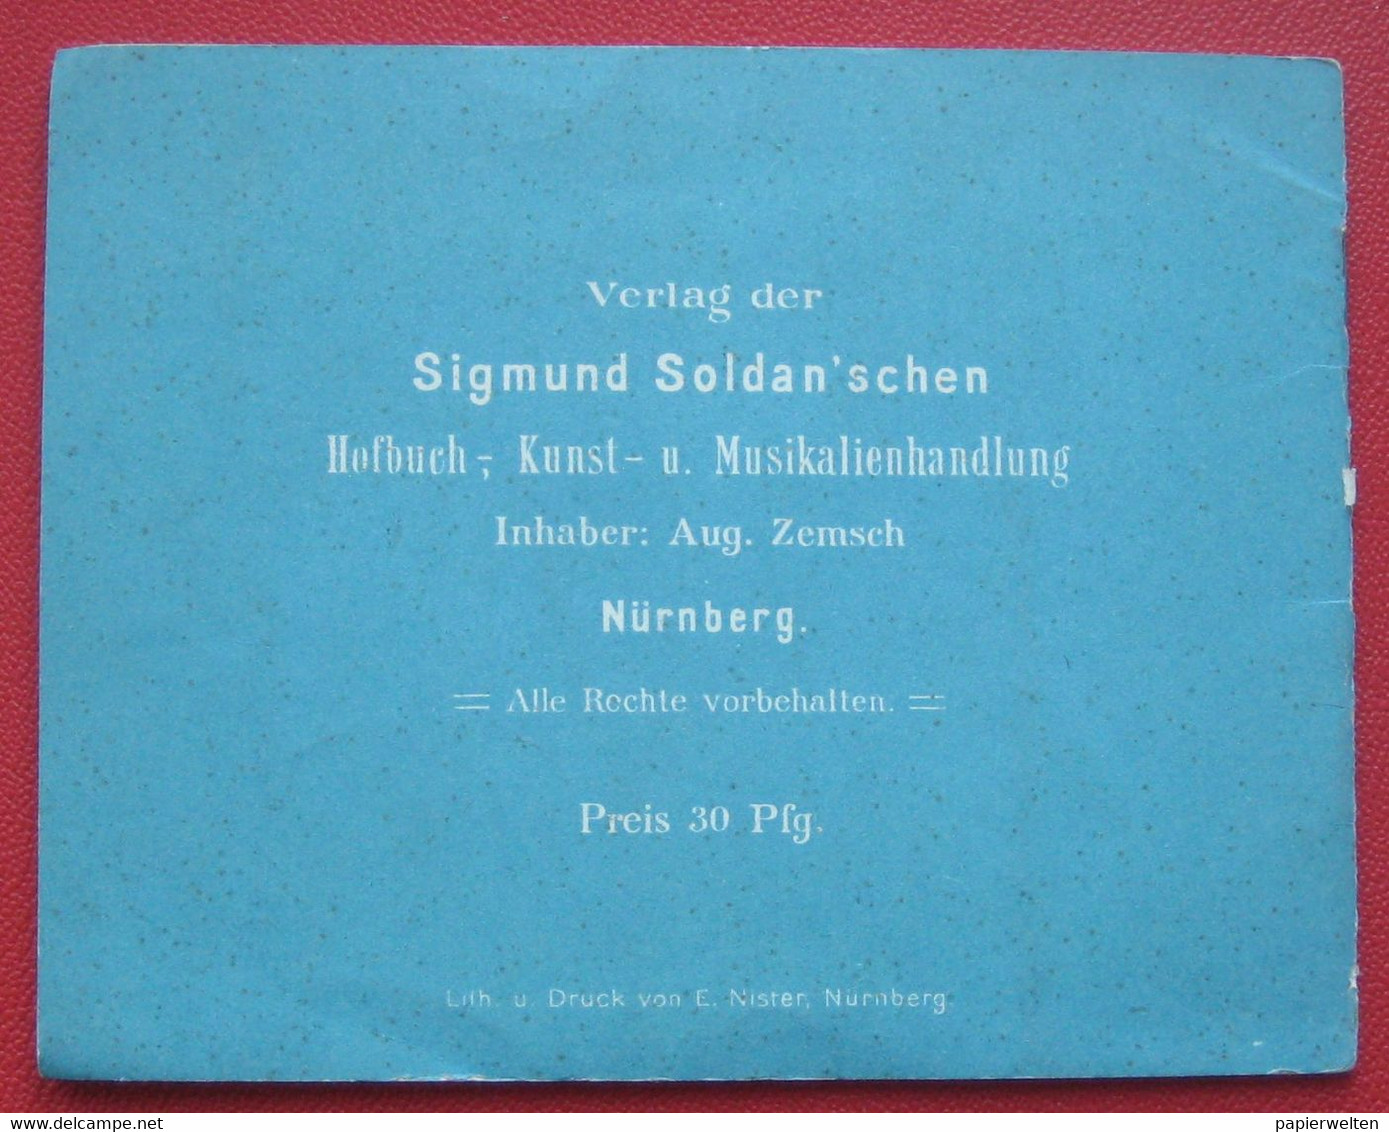 Nürnberg und die Bayerische Landesausstellung 15. Mai bis 15. Oktober 1896 / Programmvorschau?